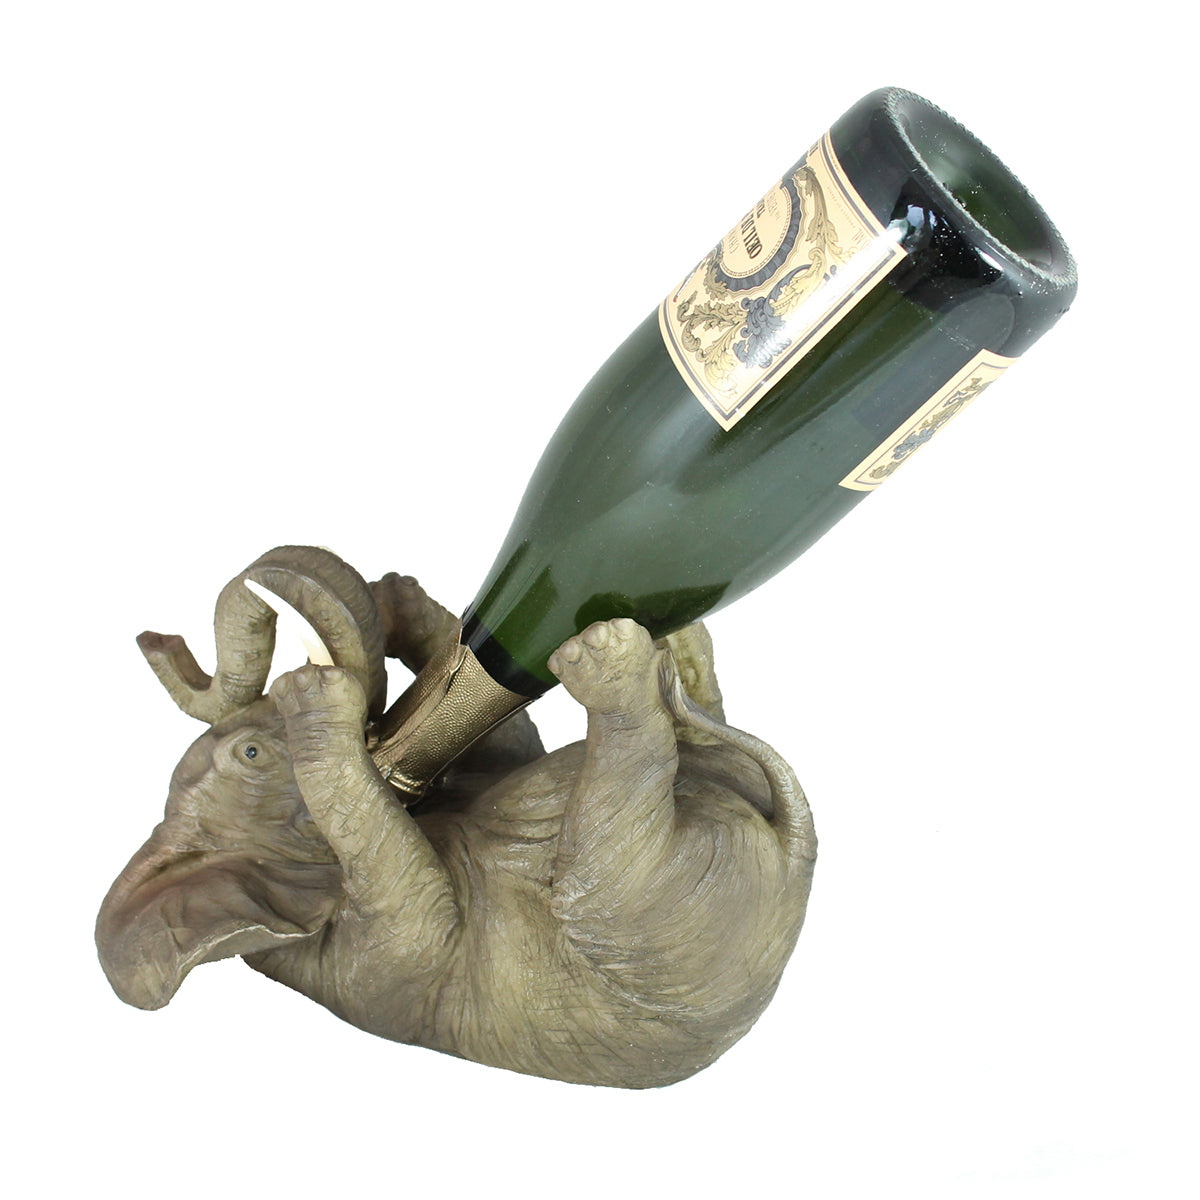 Flaschenhalter als Elefant Weinflaschenhalter Flaschenständer Dekoration